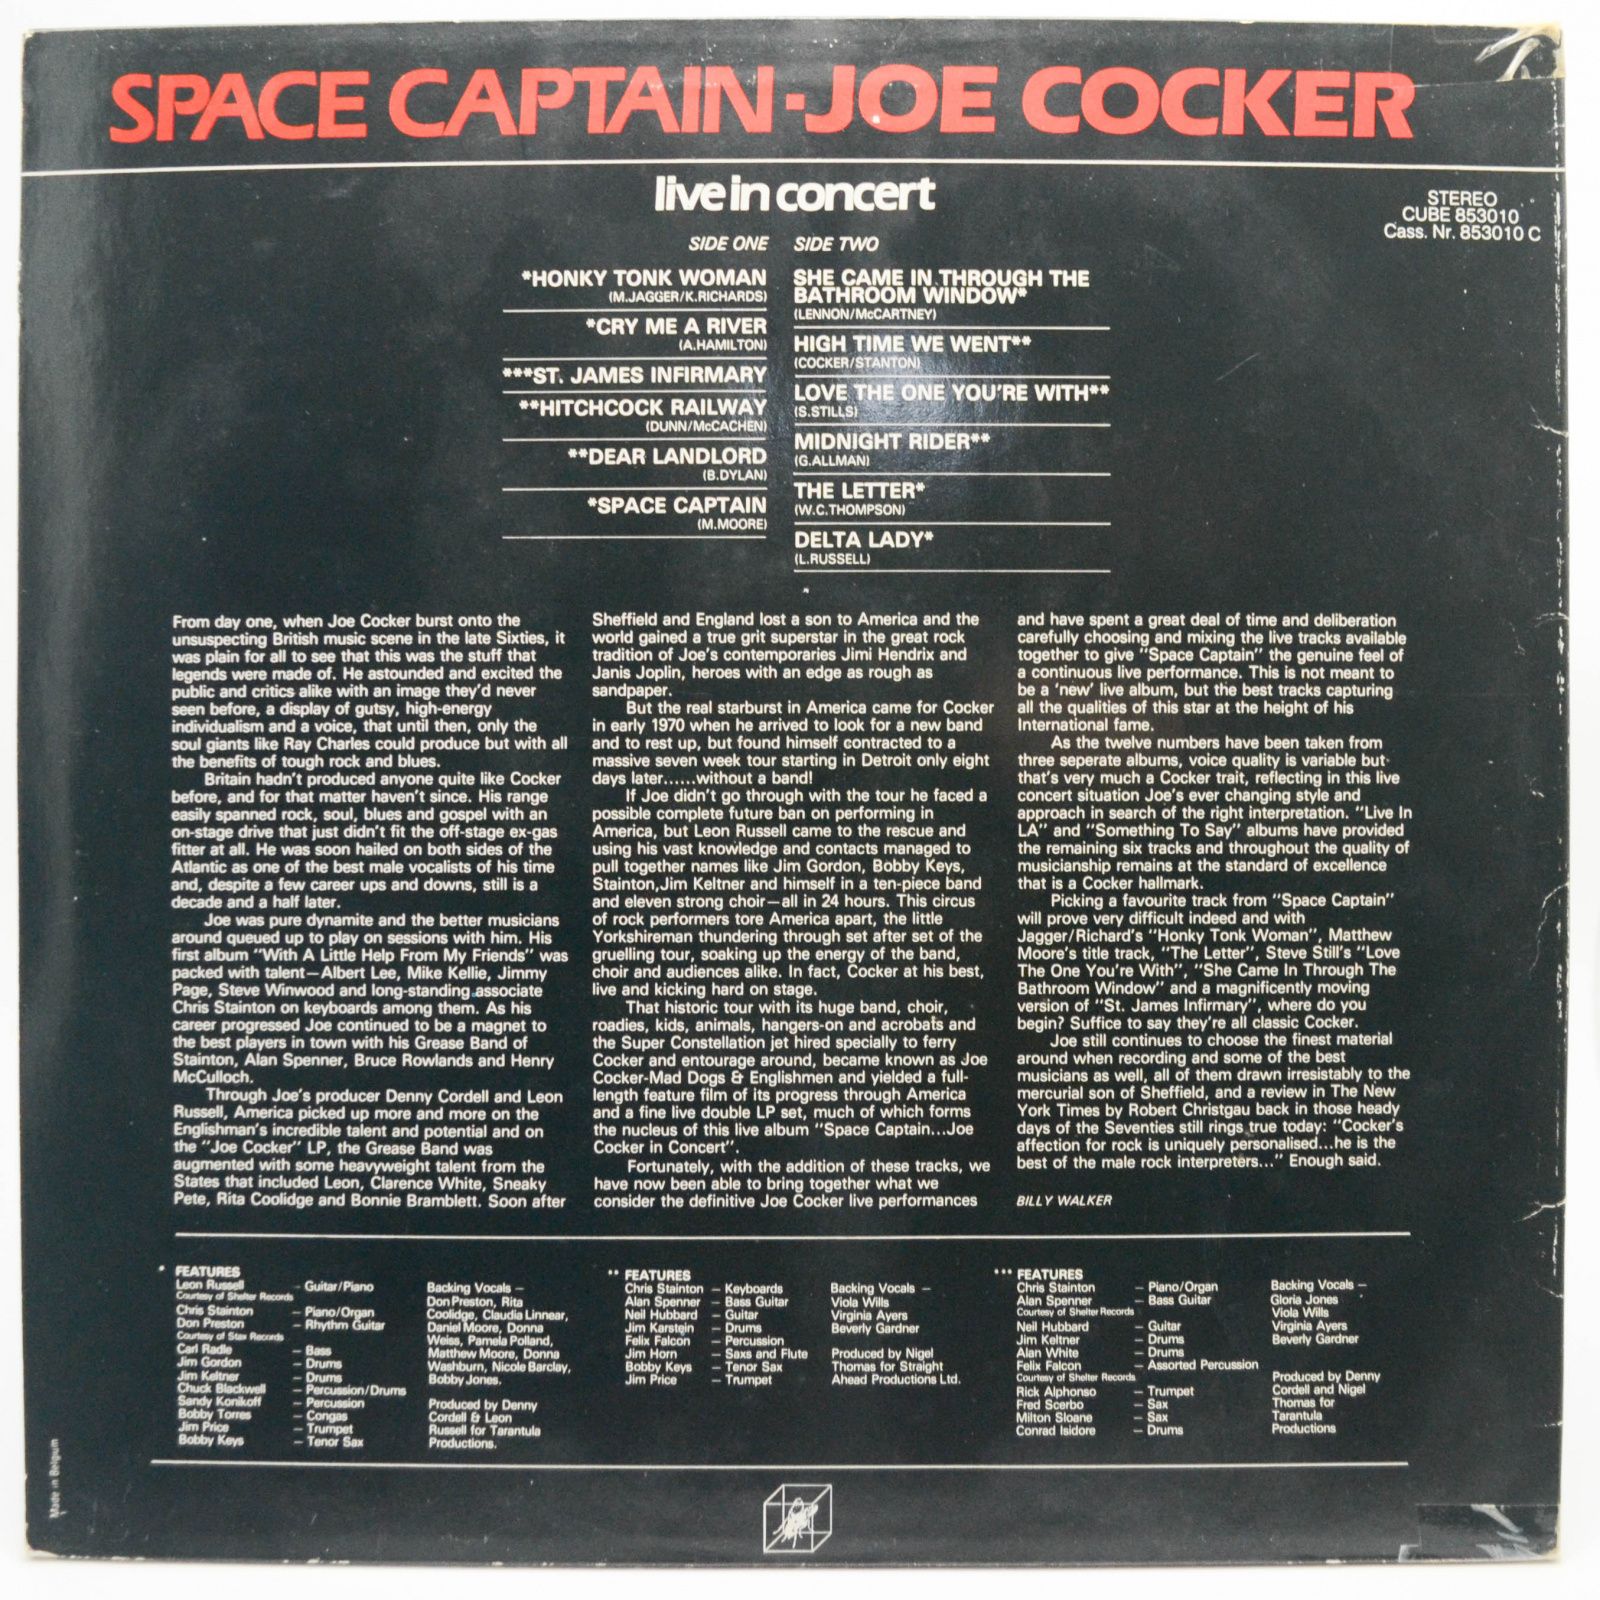 Joe Cocker — Space Captain - Live In Concert, 1976